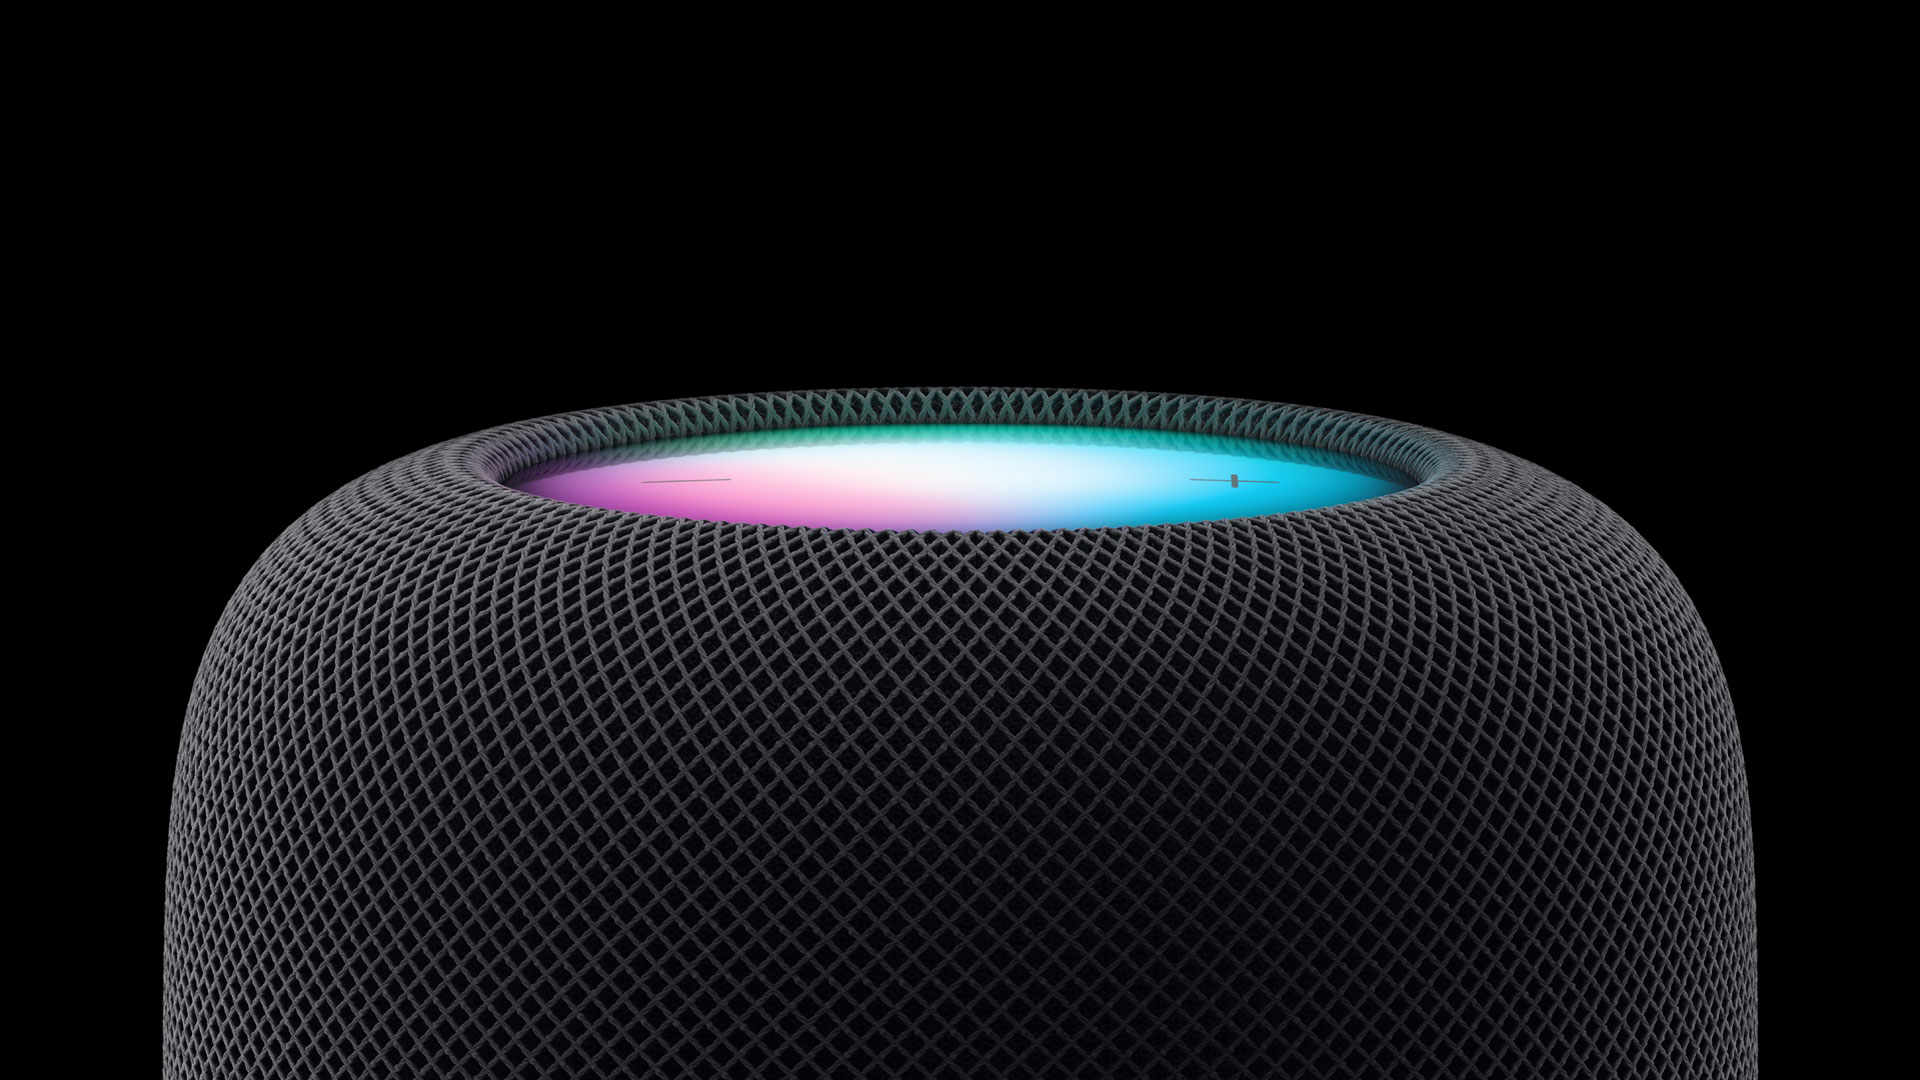 Ваш HomePod, скорее всего, останется вне партии Apple Intelligence – вот почему